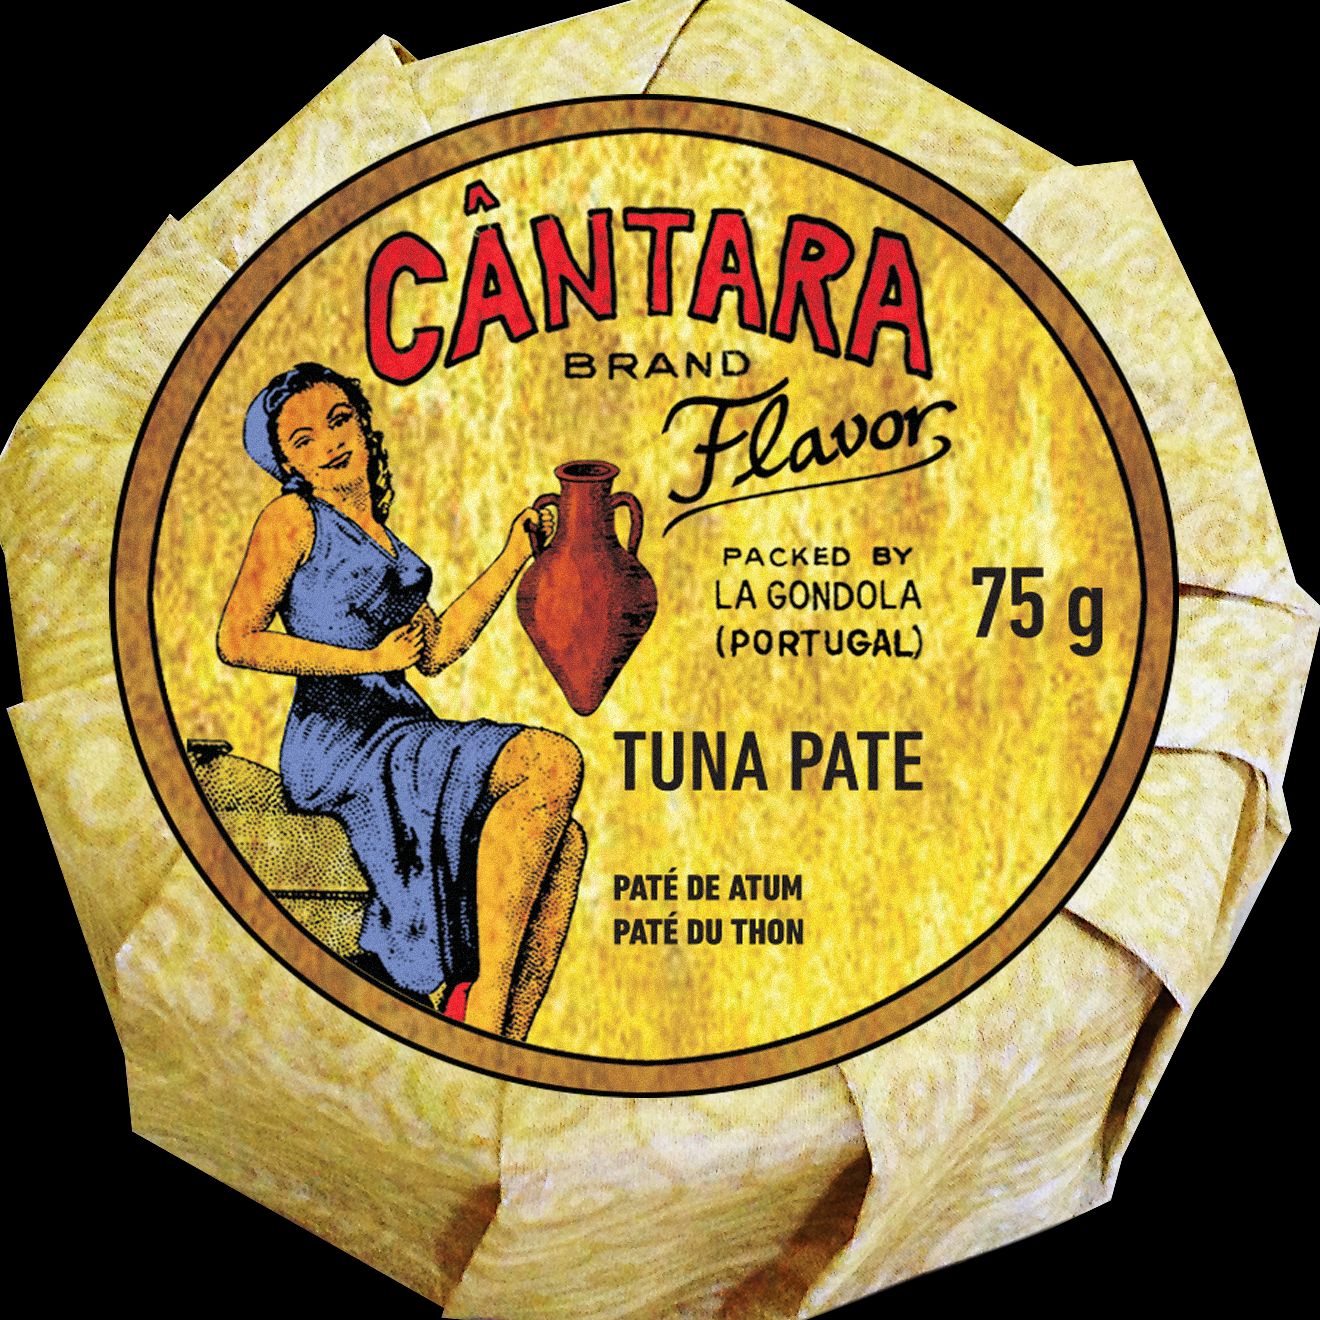 Paté de atún, A Cántara, 75 g